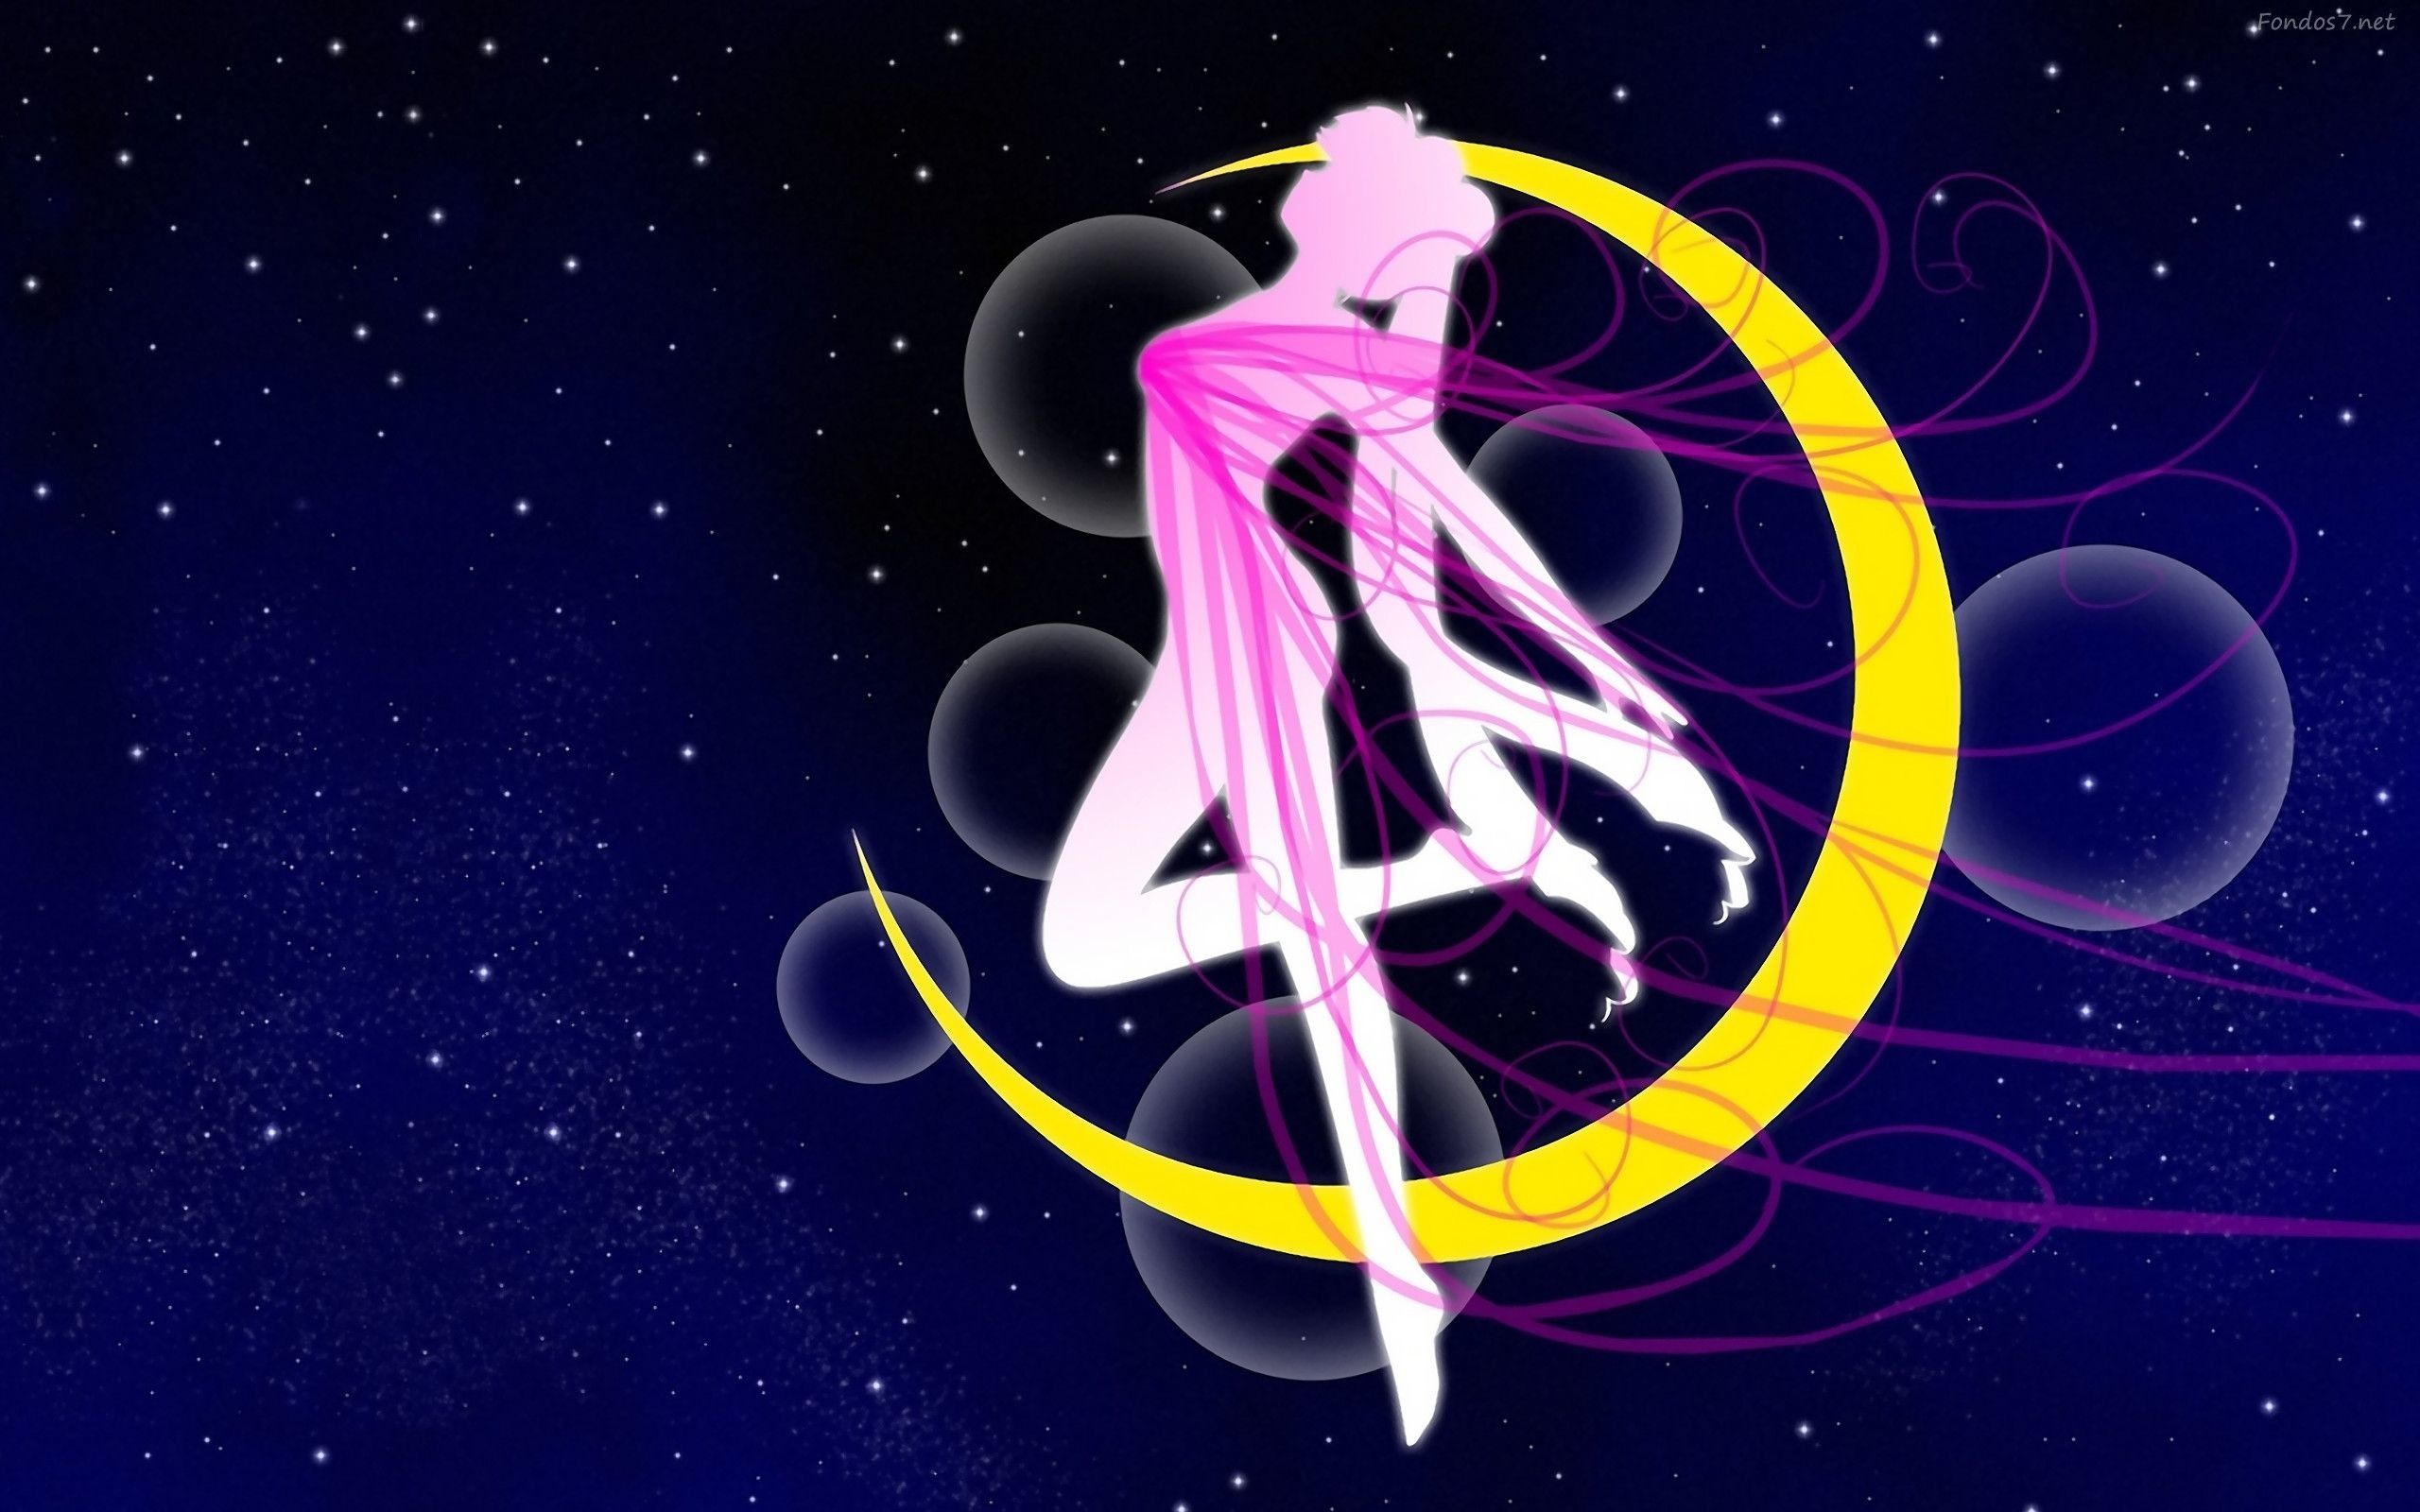 Fondos De Pantalla De Sailor Moon Fondosmil Fondo de pantalla anime bishoujo senshi sailor moon de alta calidad para escritorio y android. fondos de pantalla de sailor moon